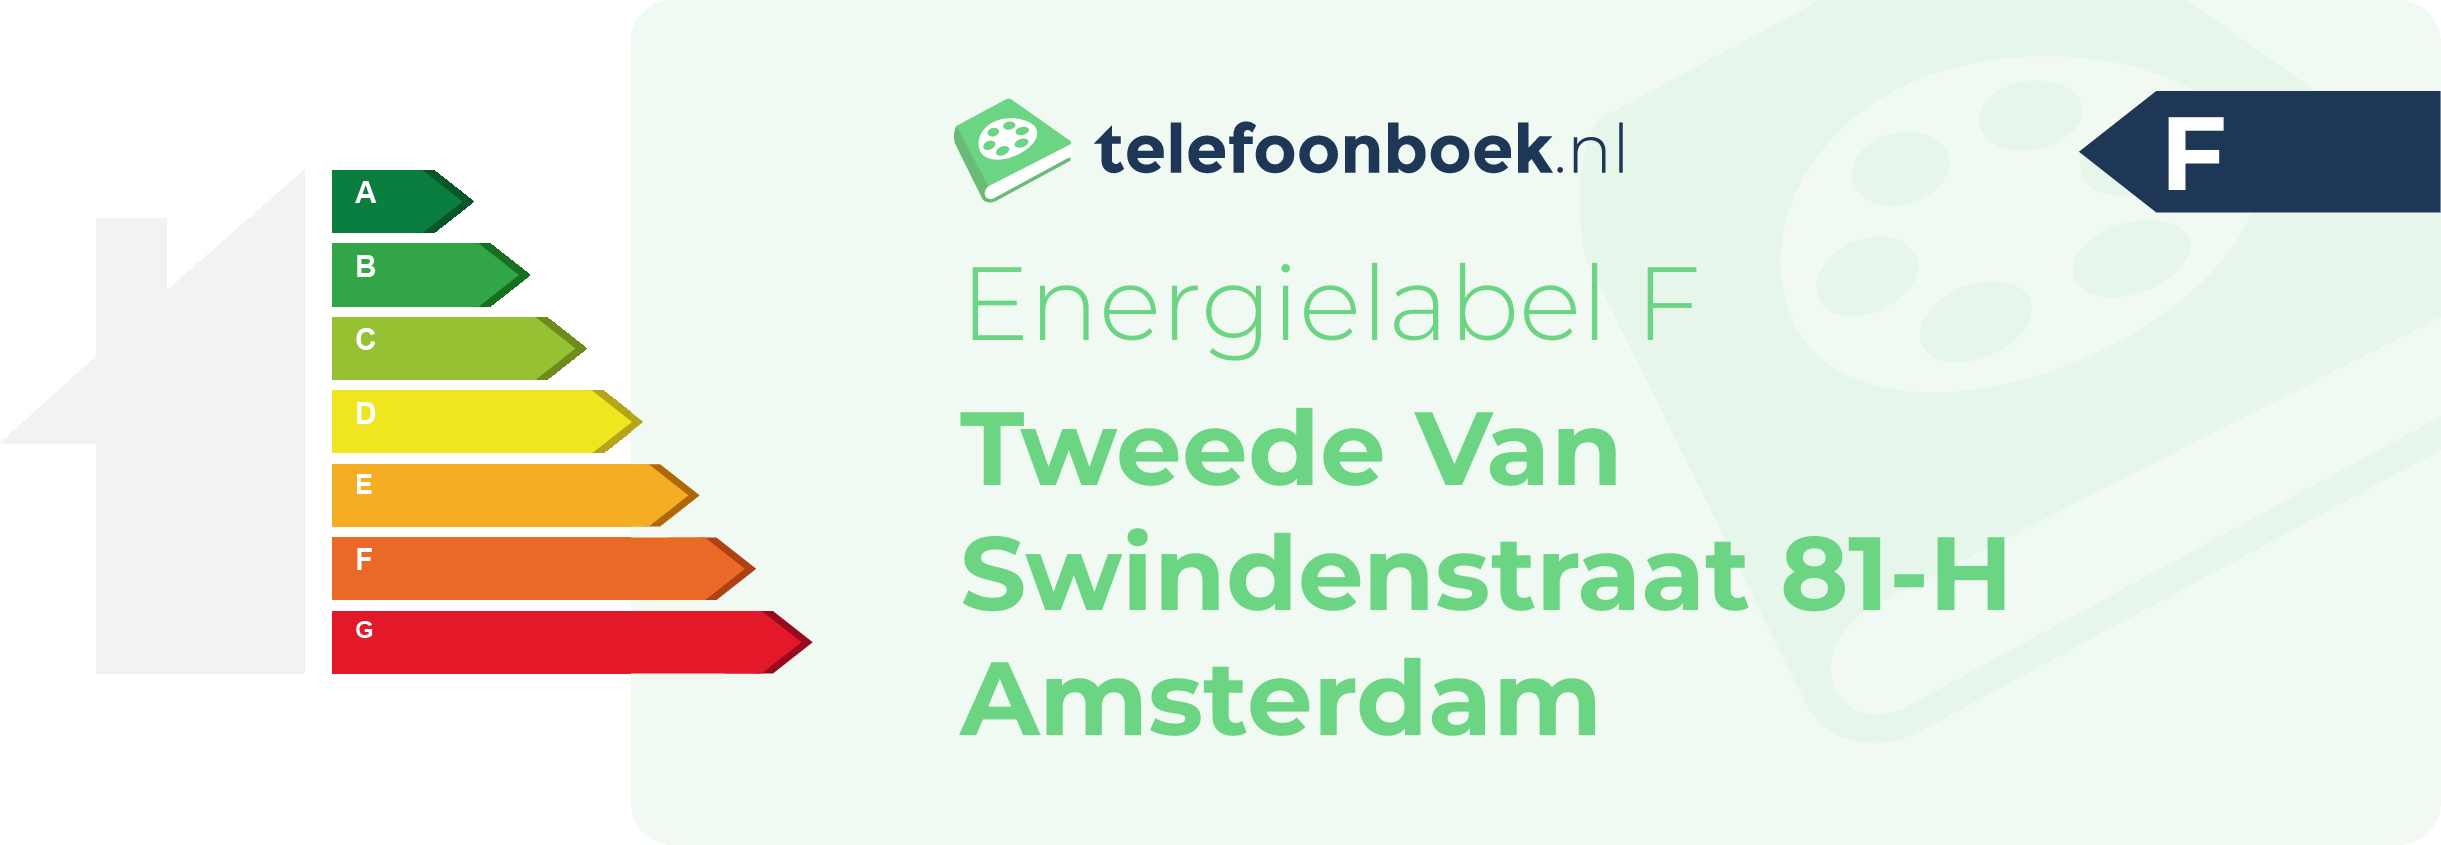 Energielabel Tweede Van Swindenstraat 81-H Amsterdam